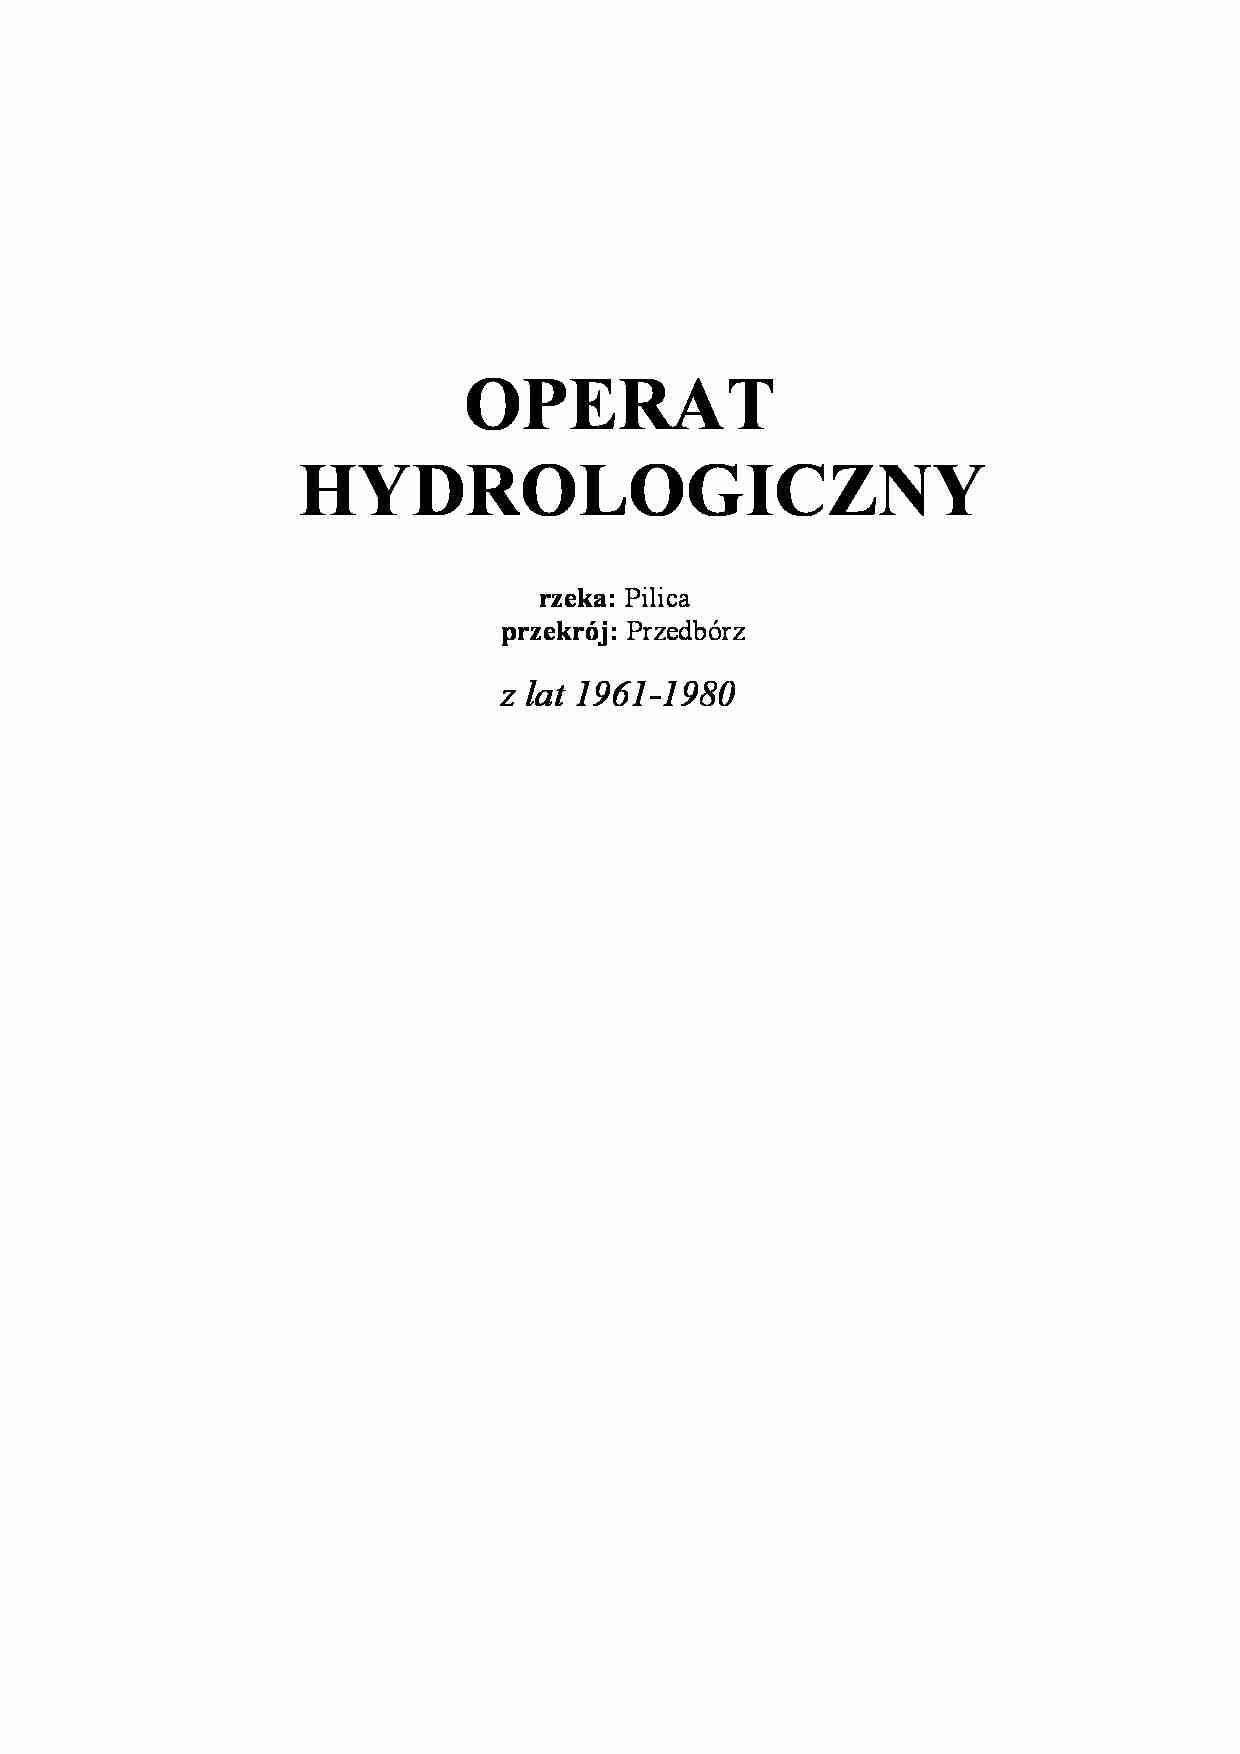 Operat hydrologiczny - rzeka Pilica - omówienie - strona 1